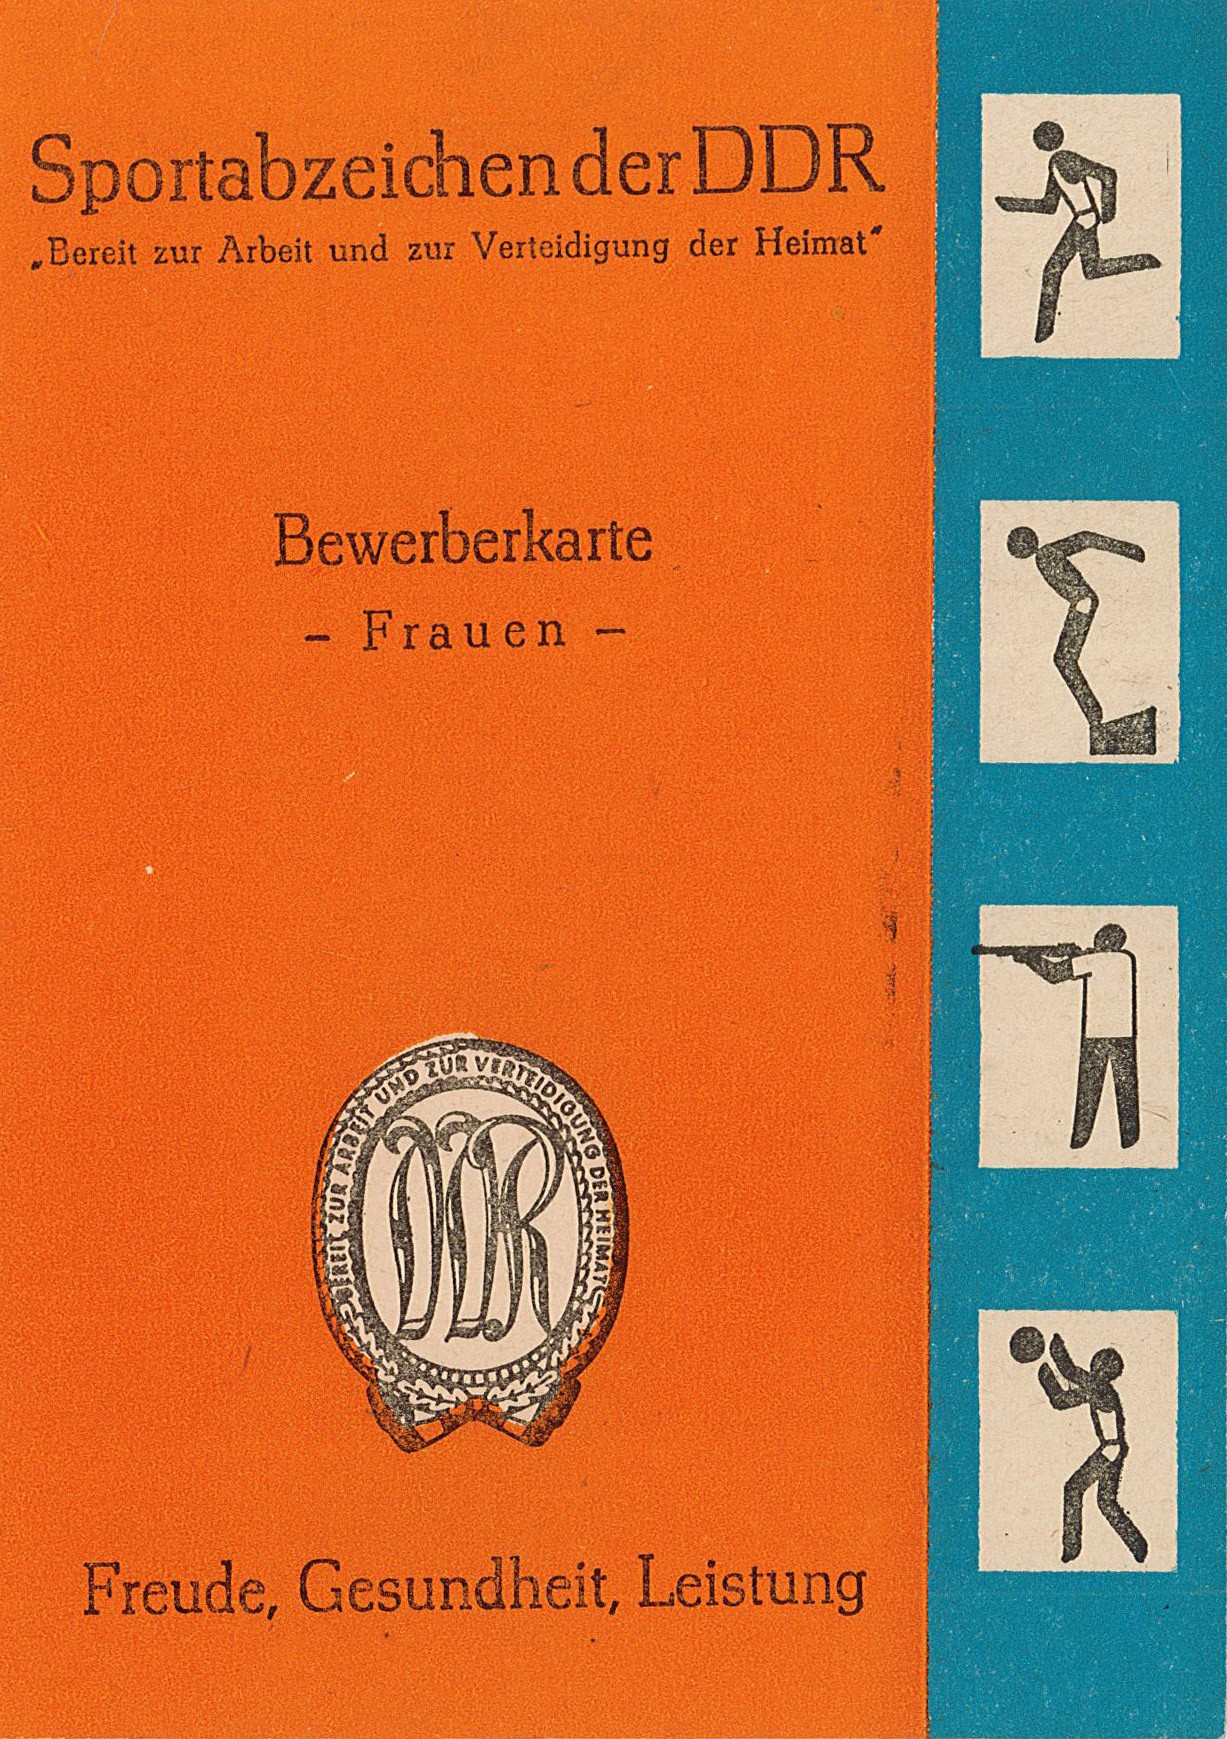 Bewerberkarte für das Sportabzeichen der DDR - Frauen (Museum Wolmirstedt RR-F)